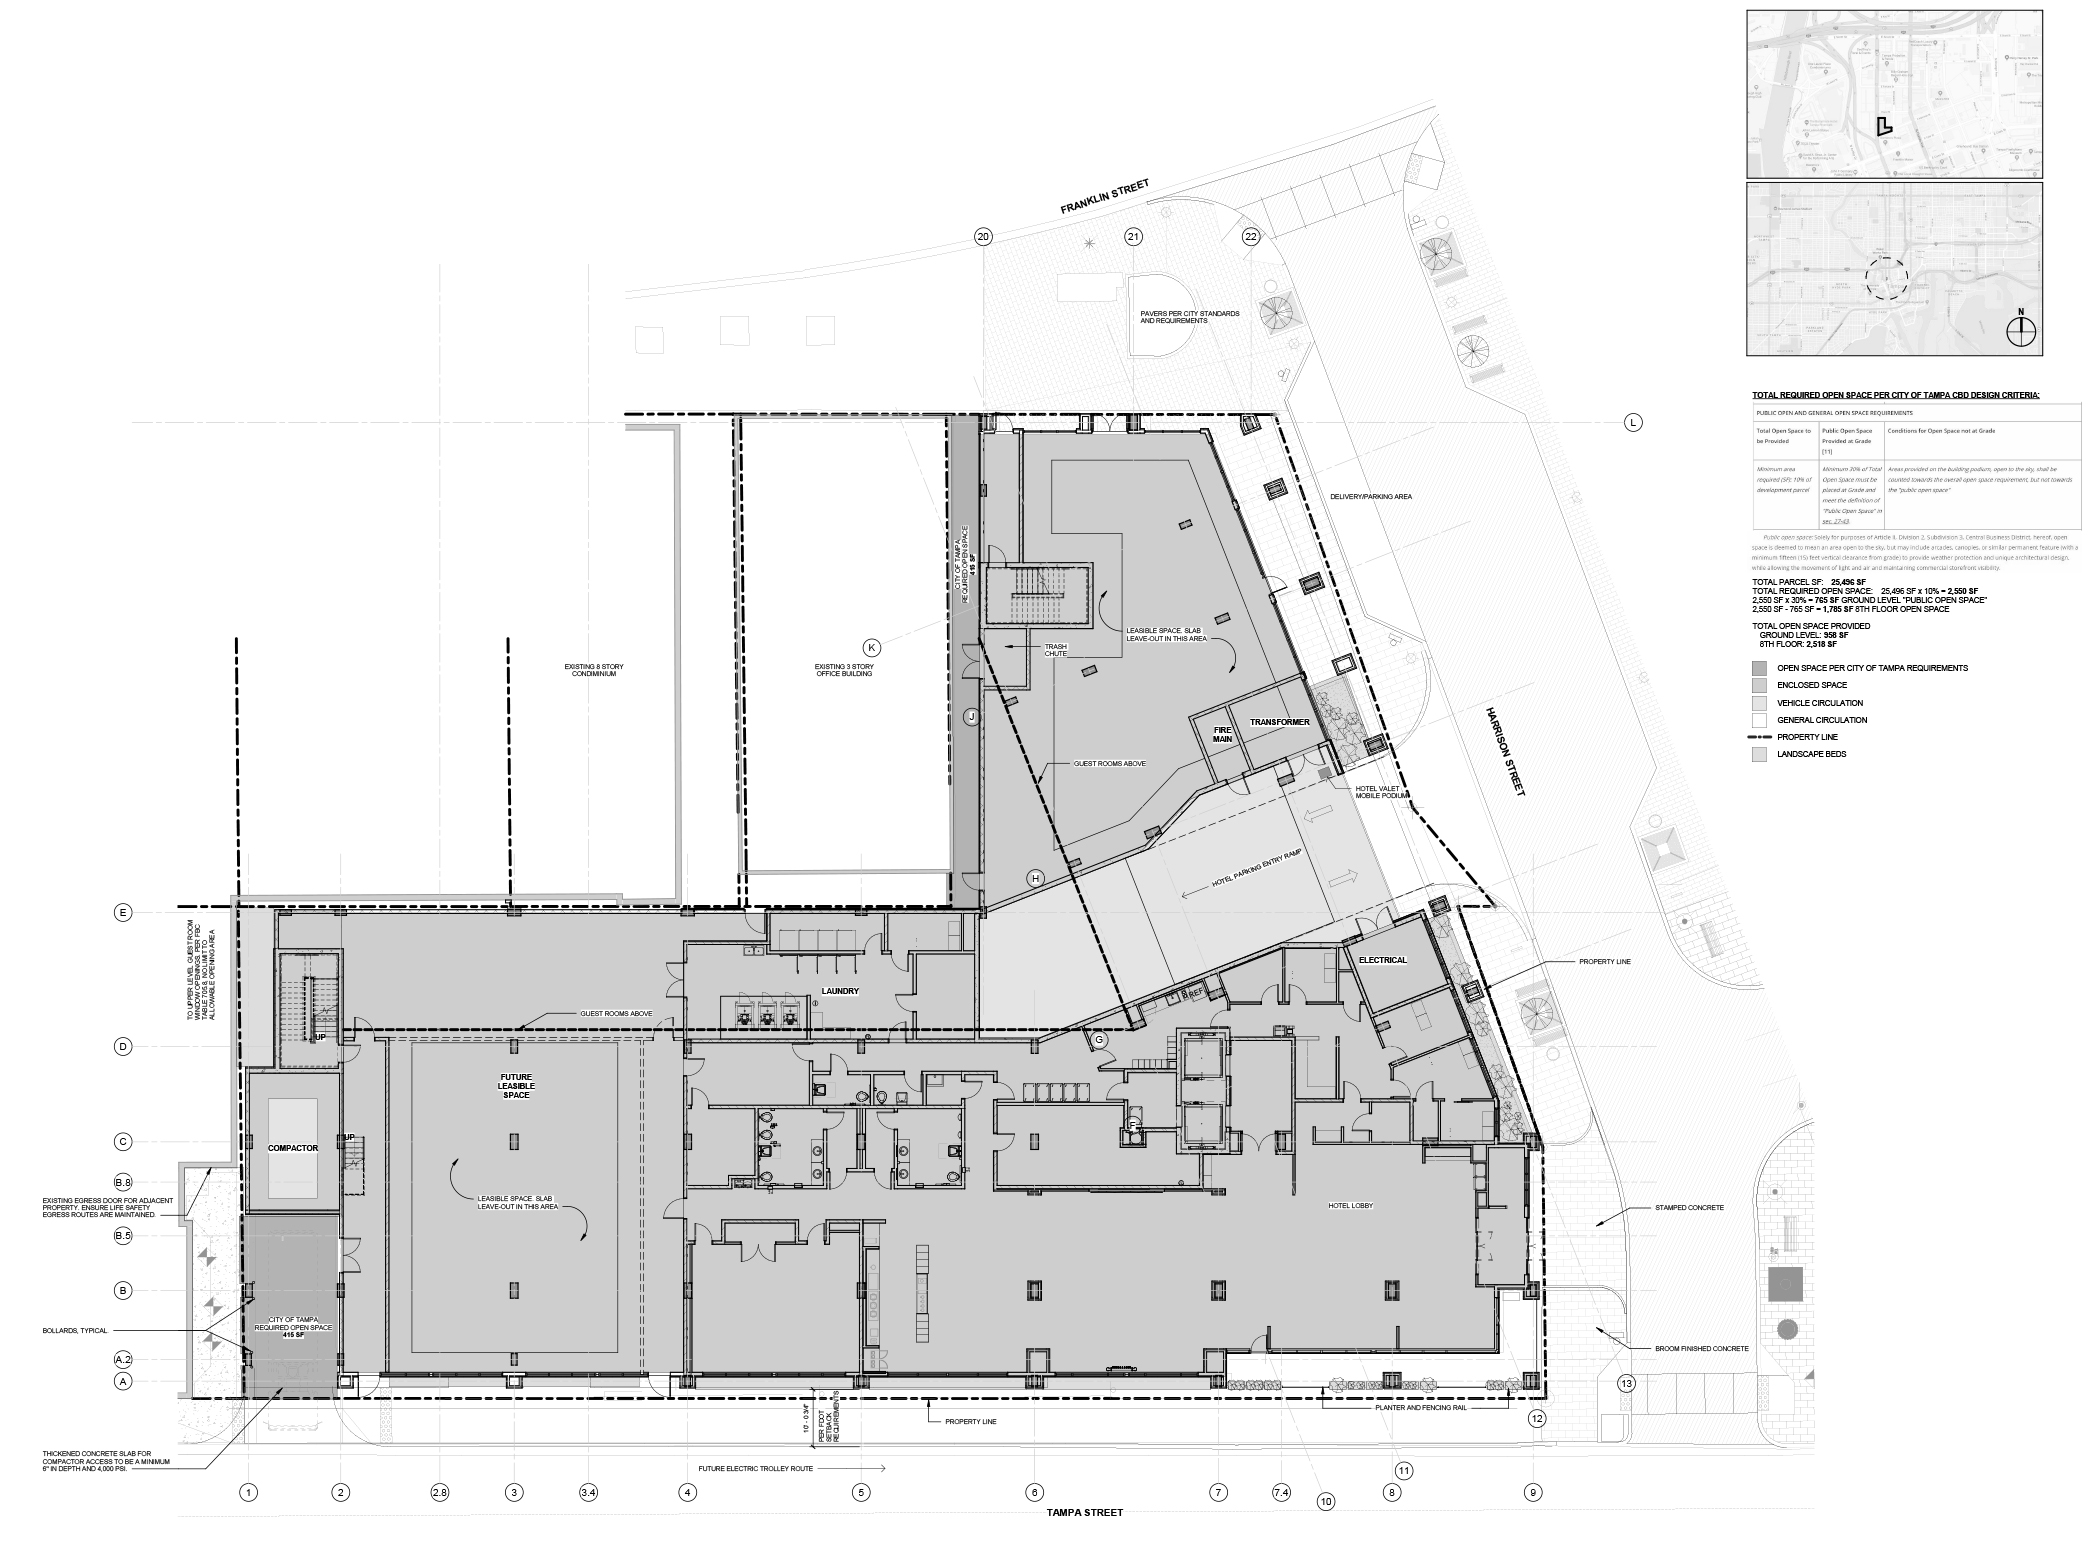 Springhill Suites Site Plan